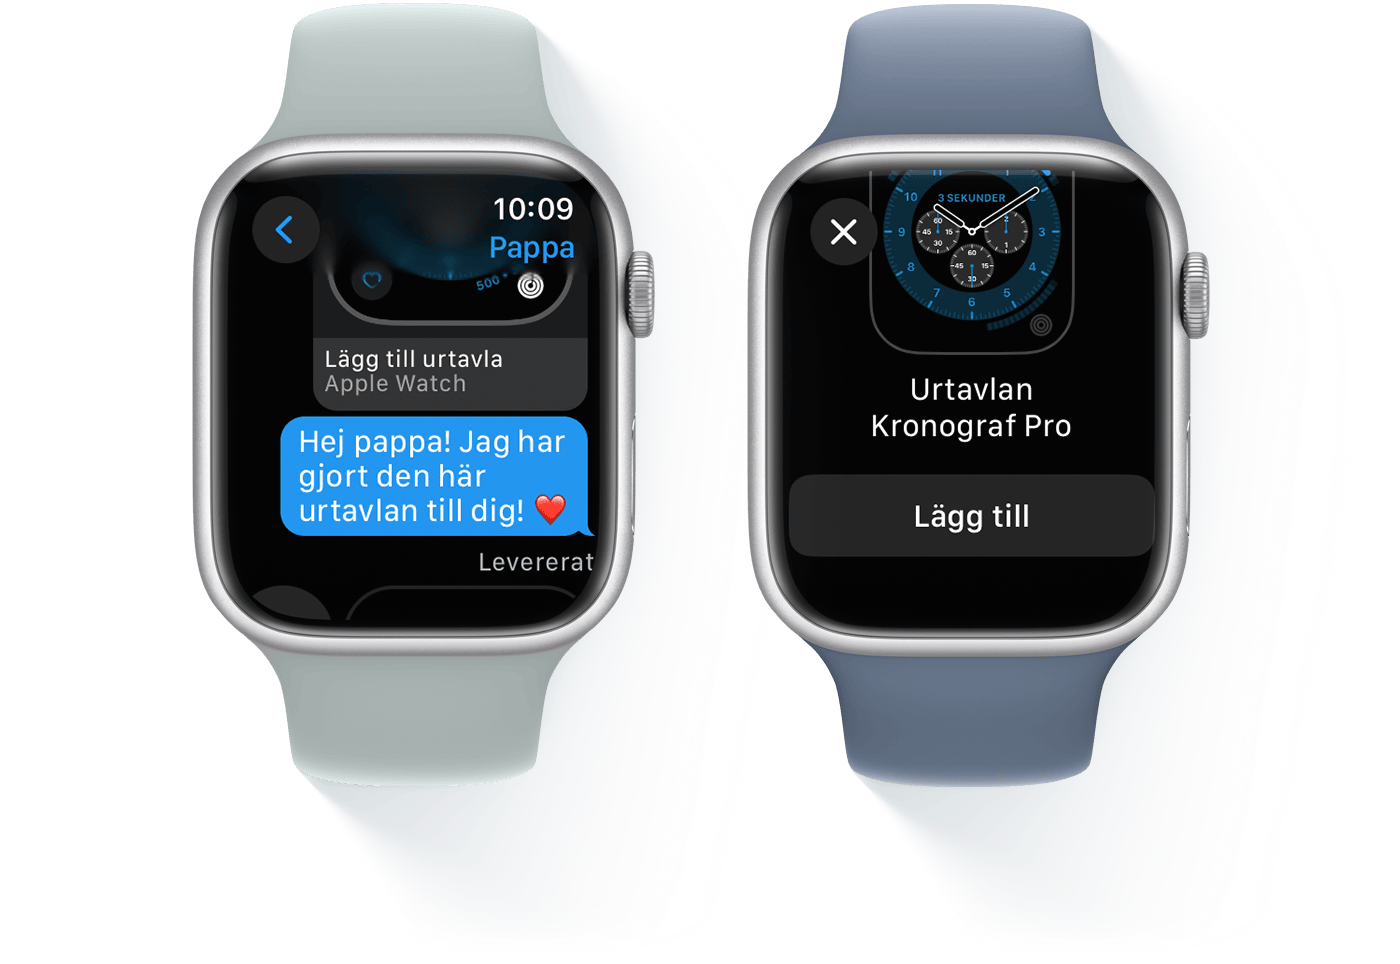 Två Apple Watch-enheter, en som visar en sms-konversation och den andra med urtavlan Kronograf Pro